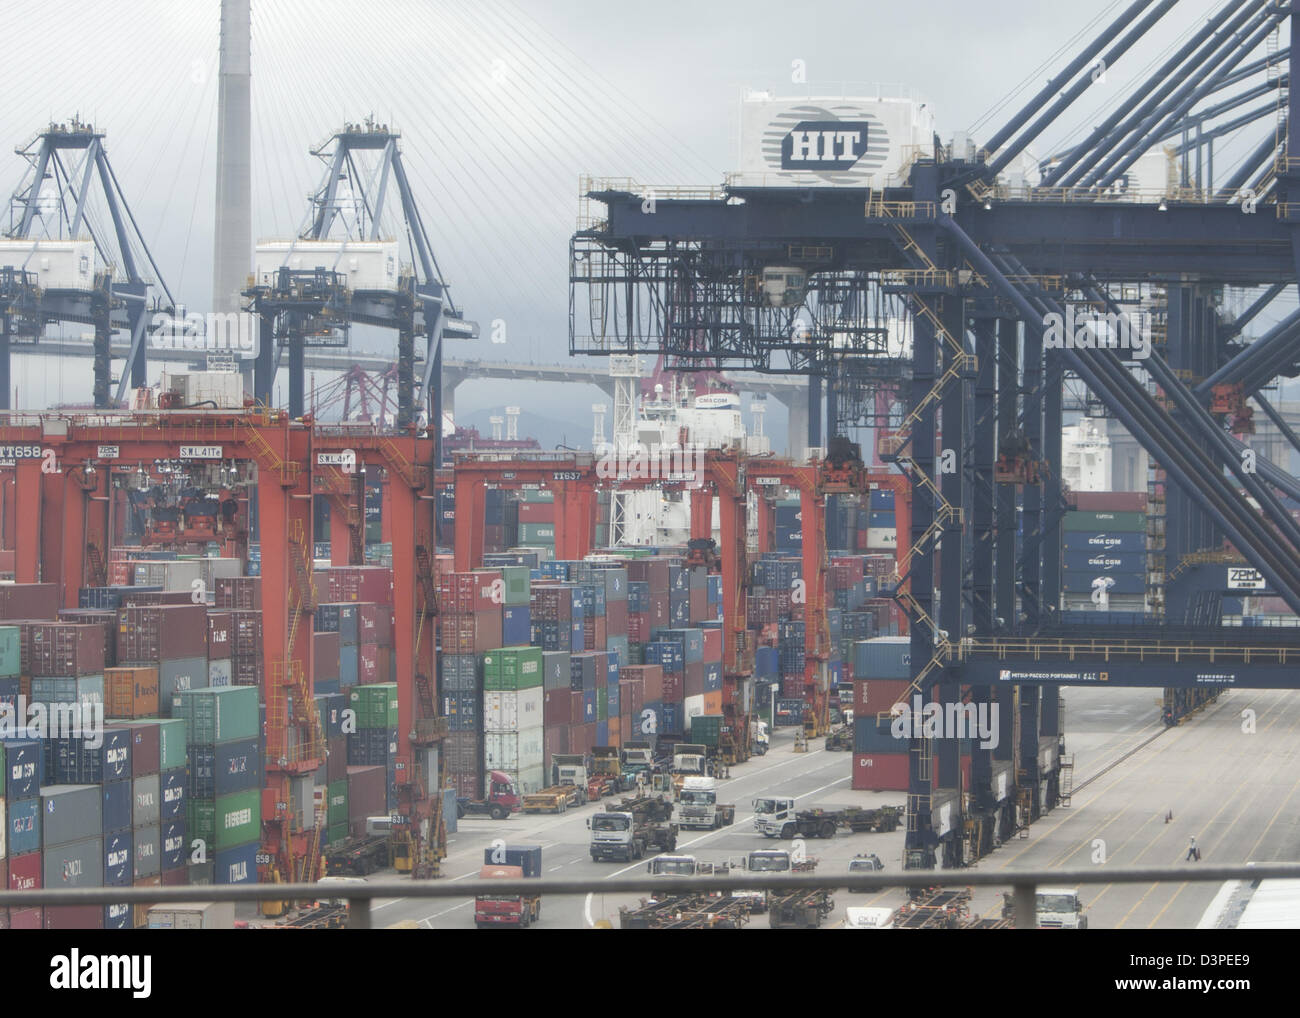 Le port de Hong Kong, situé près de la mer de Chine du Sud, port en eau profonde dominée par le commerce de produits manufacturés conteneurisés Banque D'Images